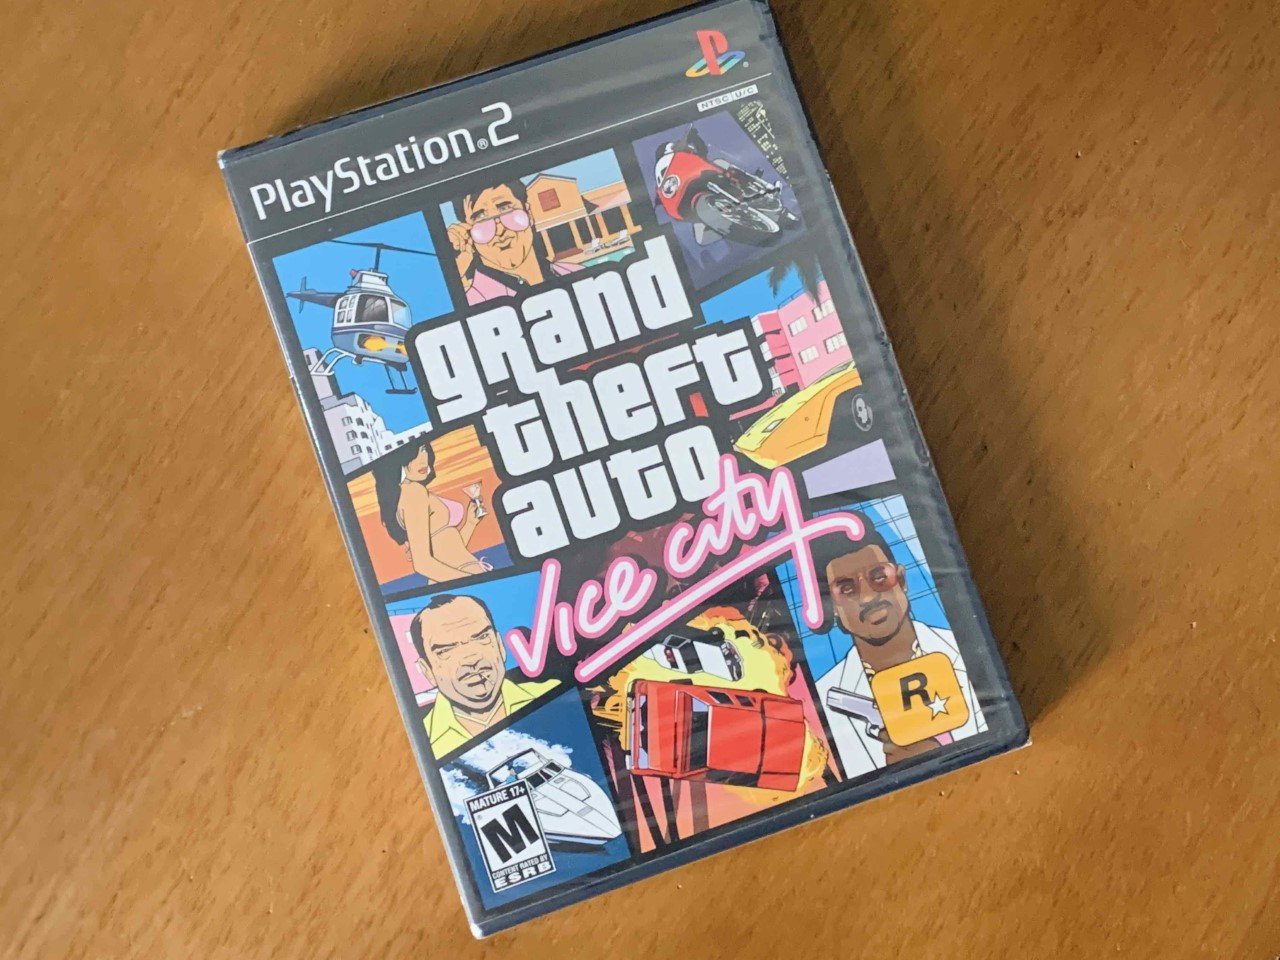 GTA Vice City PS2 Play2 Playstation 2